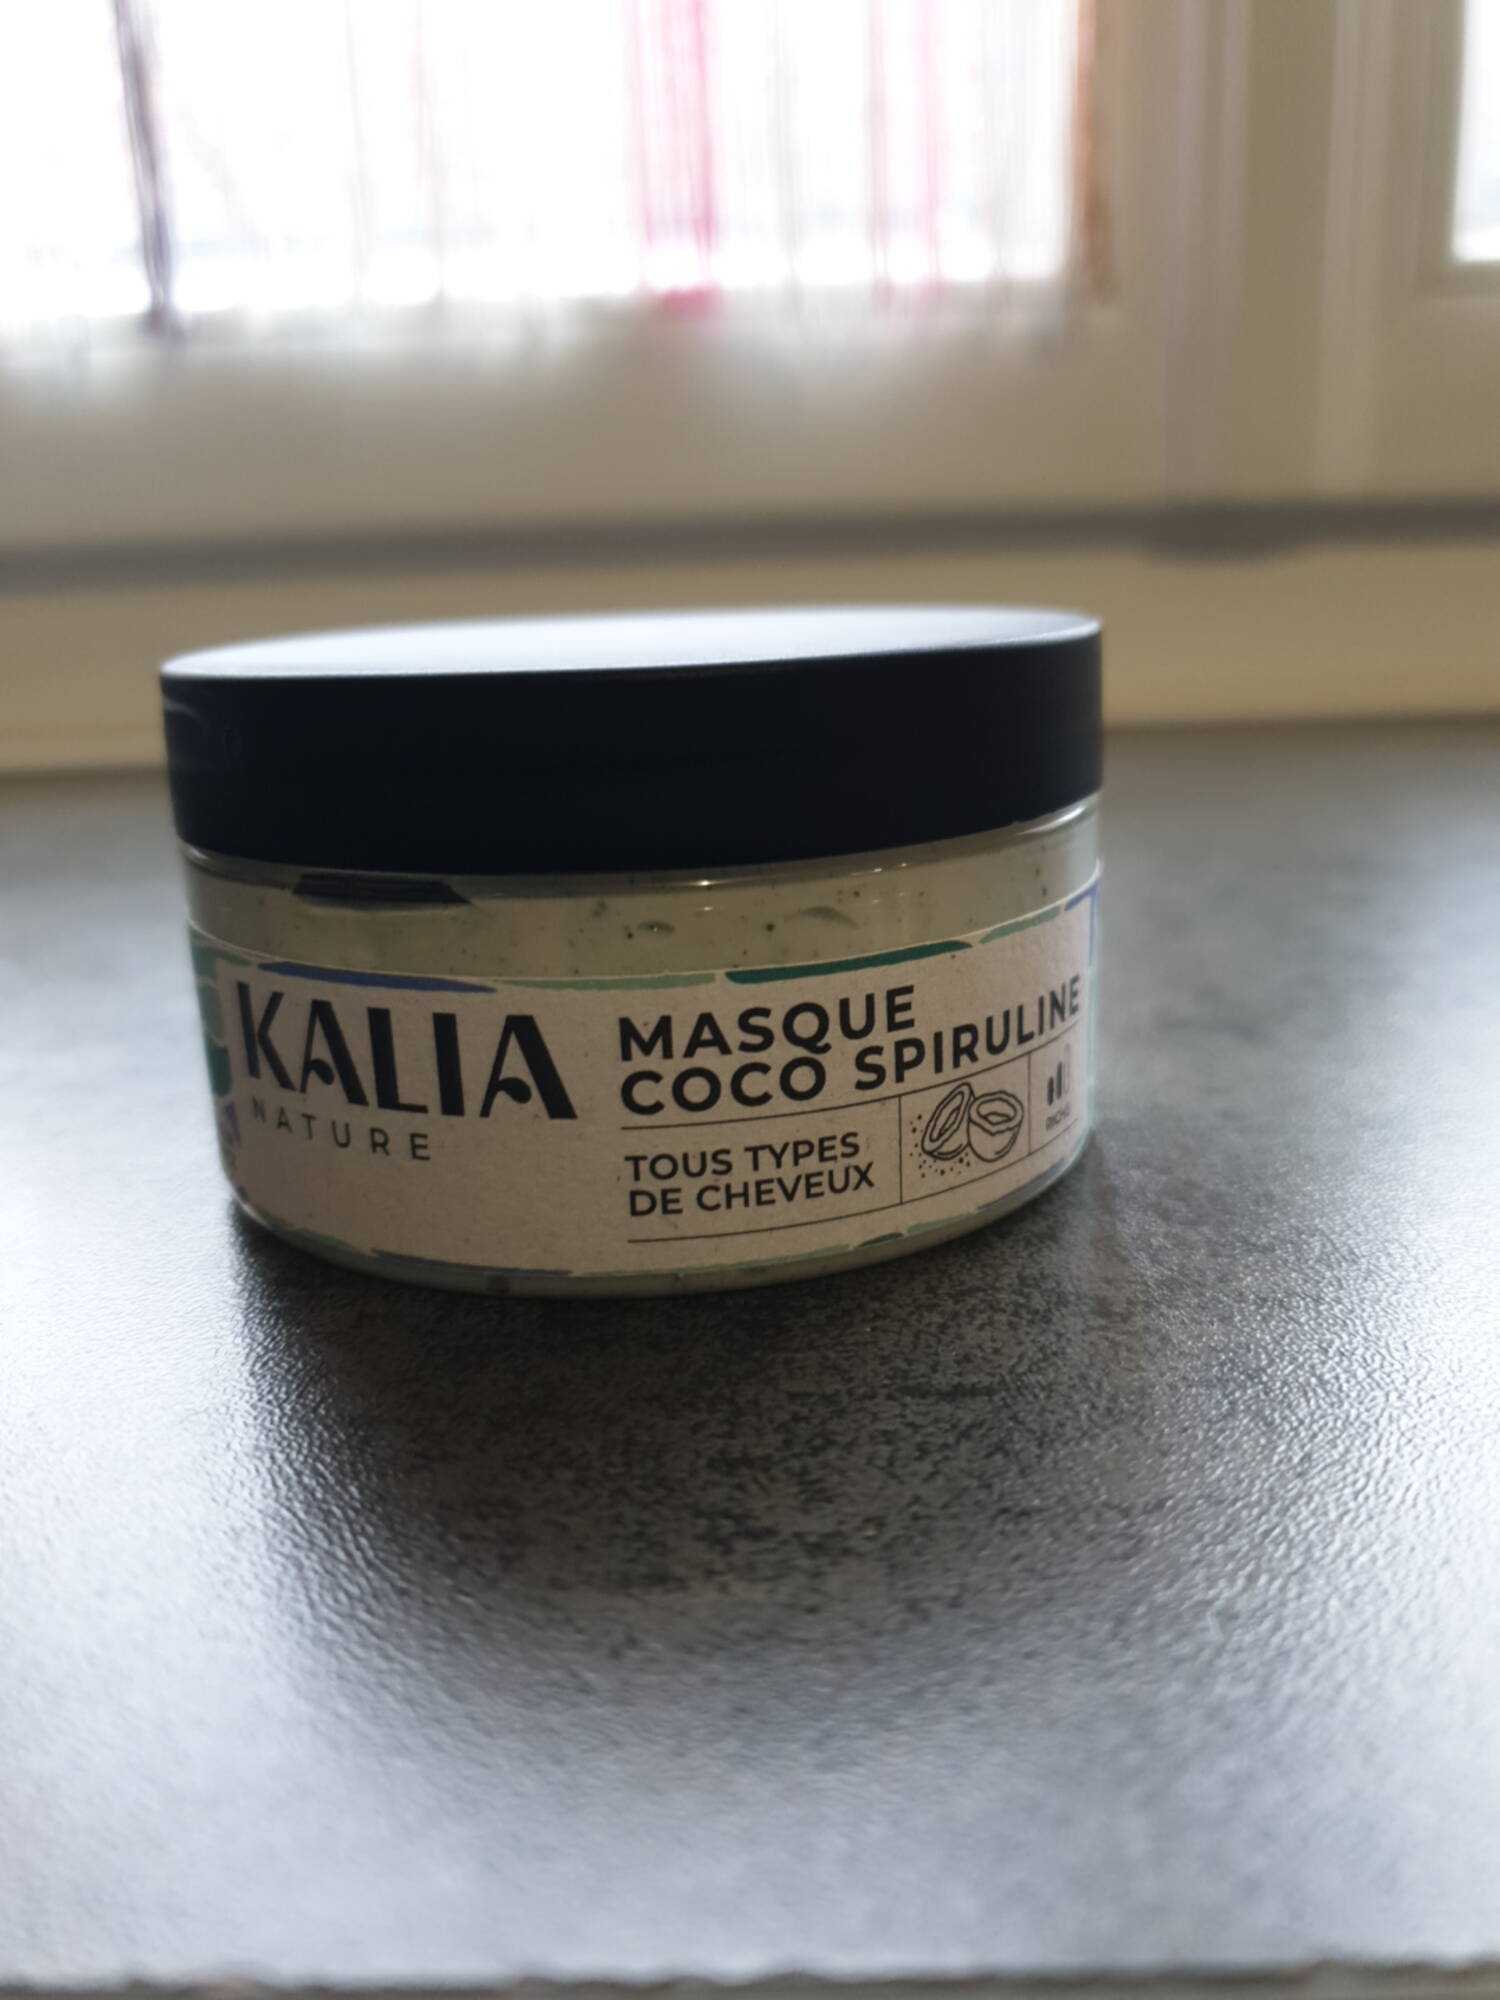 KALIA NATURE - Masque coco spiruline